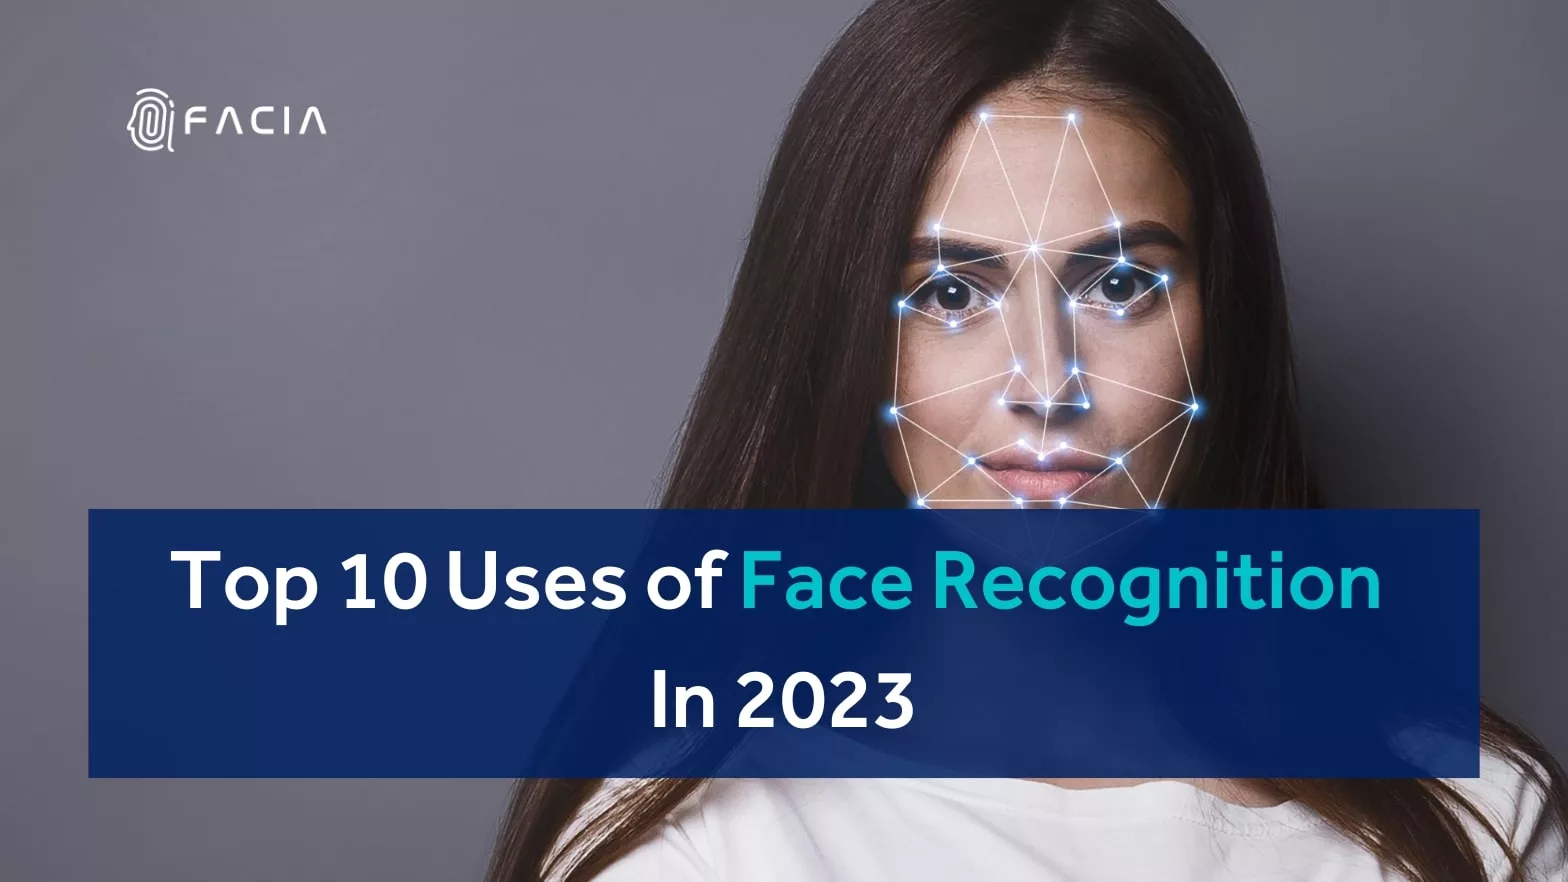 Facia top 10 uses facial recognition 2023